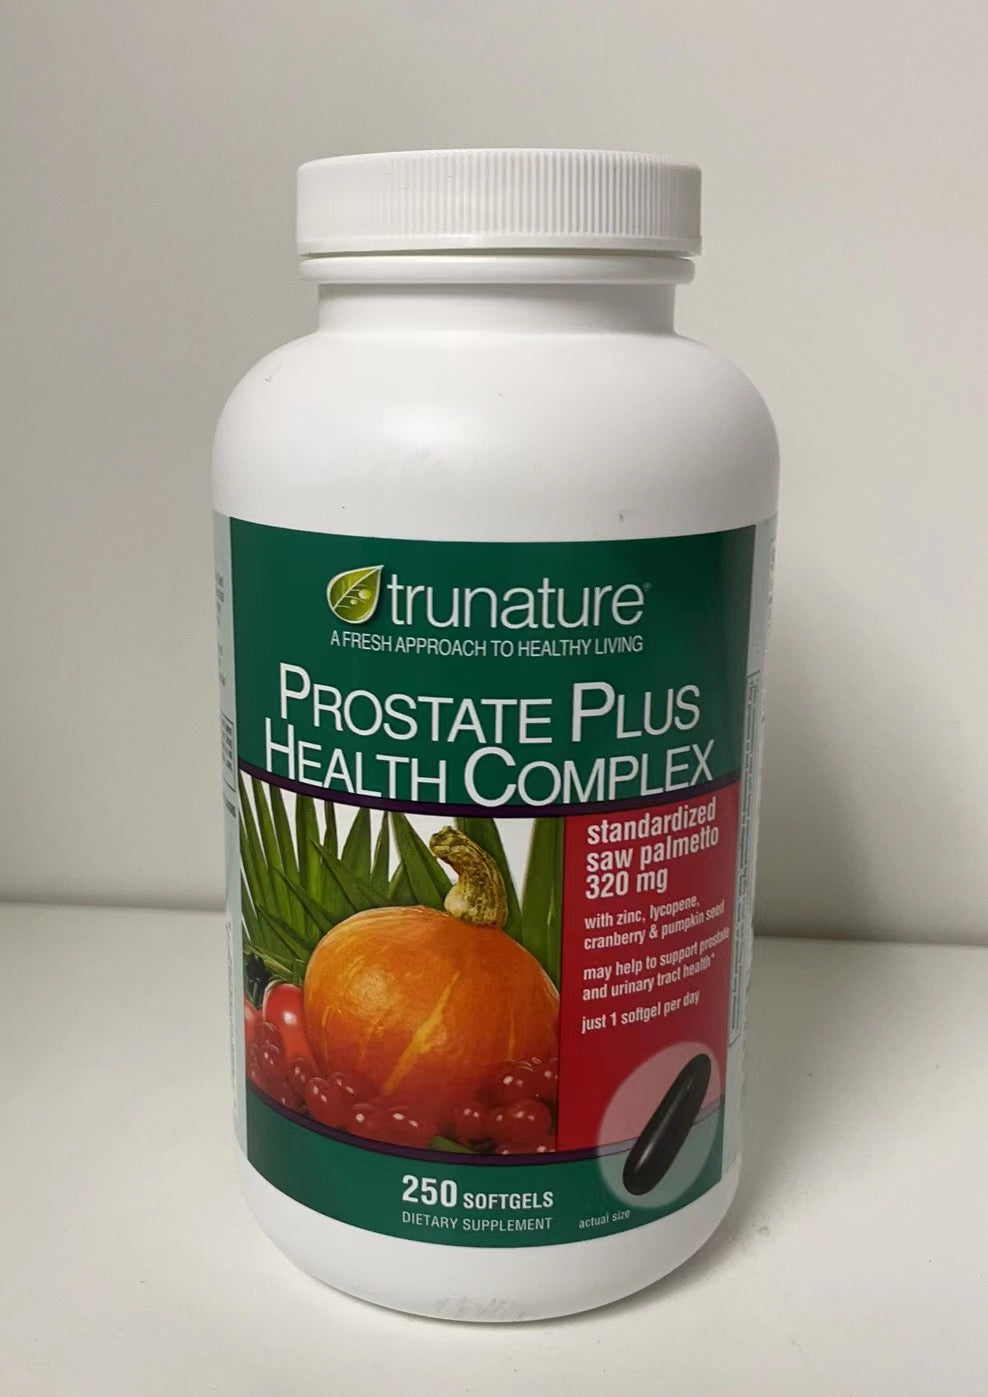 Trunature Prostate Plus Health Complex, 250 Softgels, No Gluten